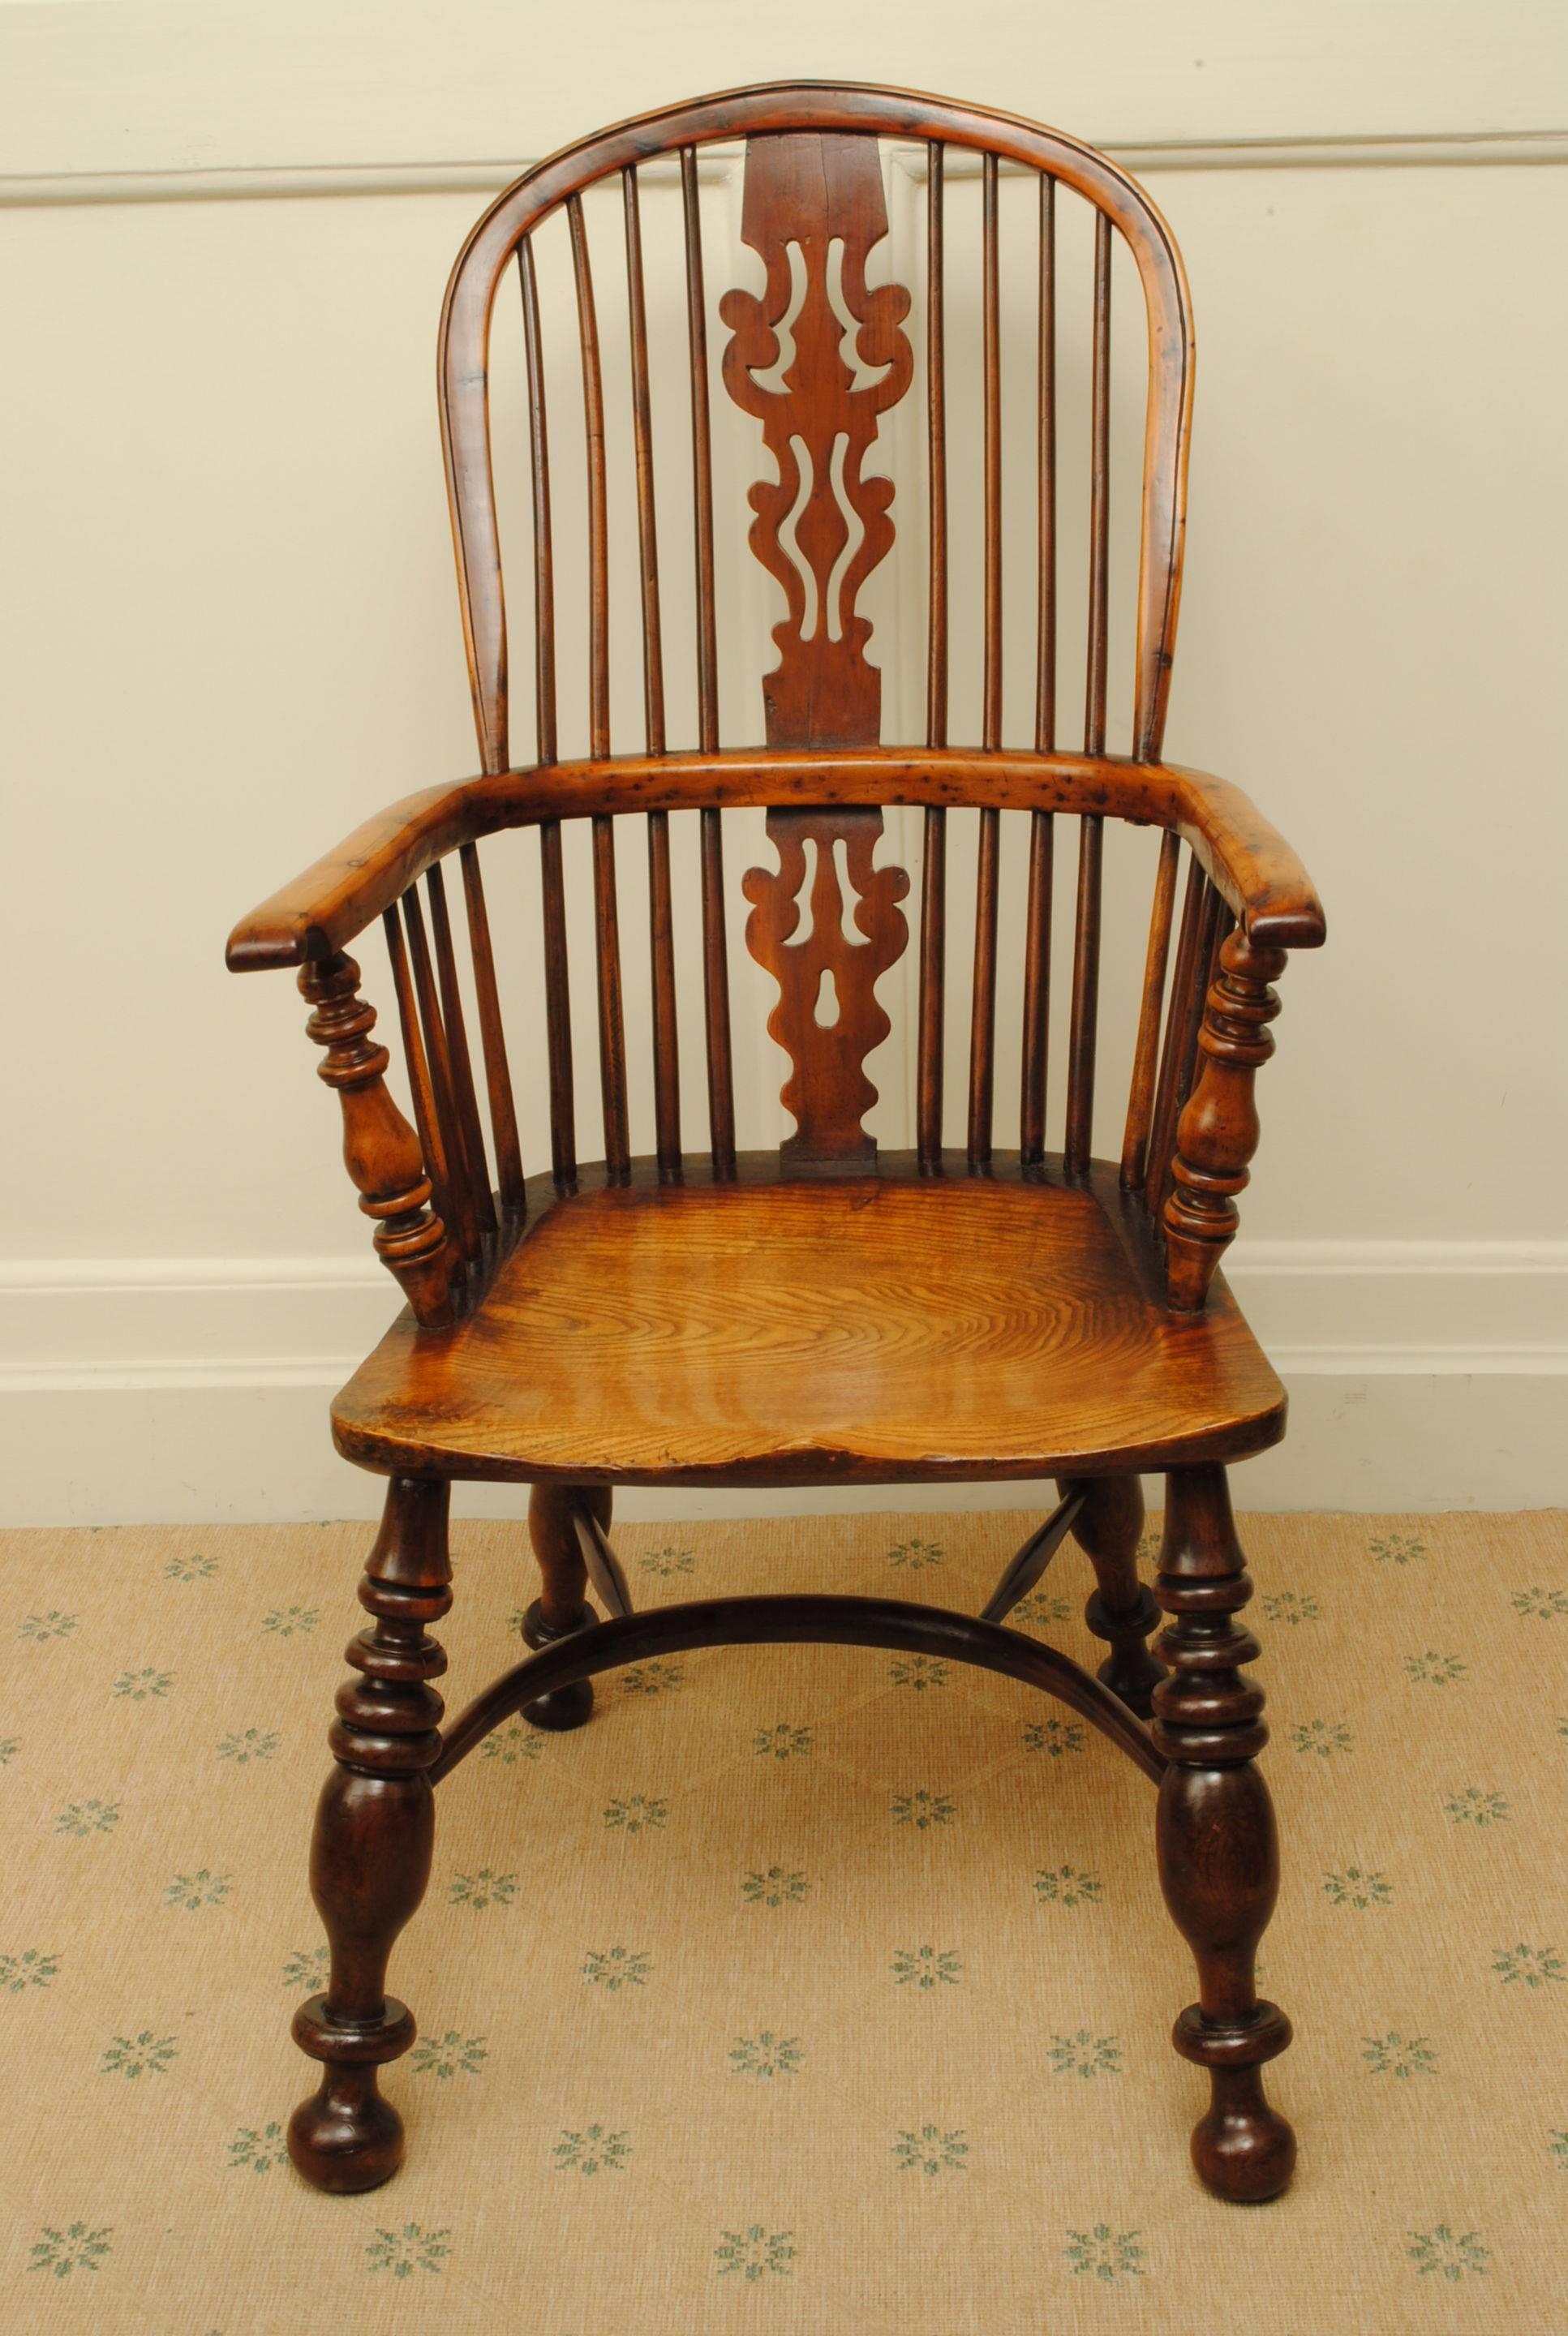 Ein großes und kühnes Beispiel für einen Nottingham Eibe und Ulme windsor Sessel mit guten starken Beinen und einer Ulme Sitz, wenn gute Farbe.
Dies ist einer der kühnsten Sessel, die ich je gesehen habe.